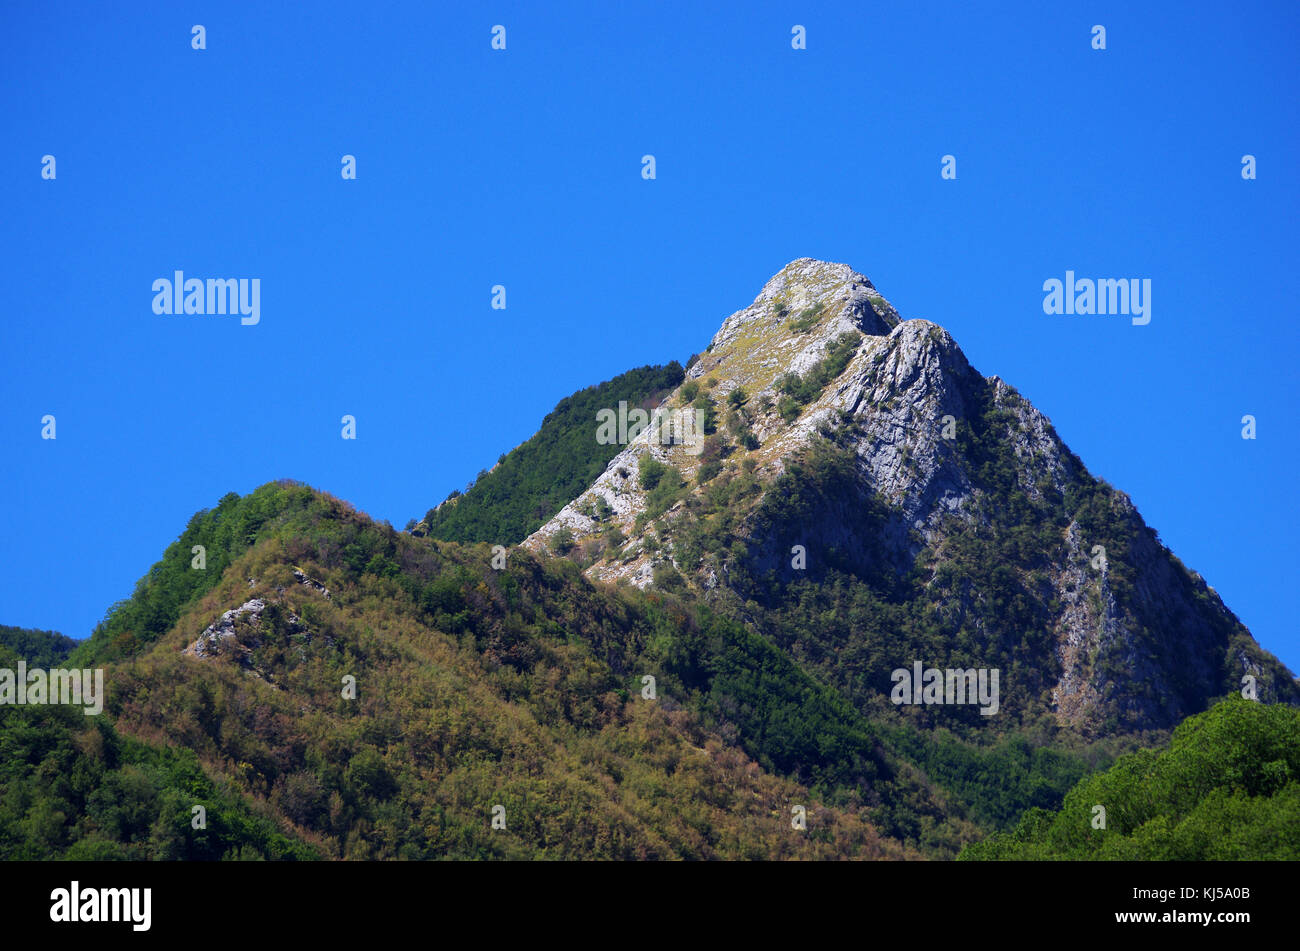 Mountain top senza alberi dove si può vedere la pietra scolpita dalle intemperie Foto Stock